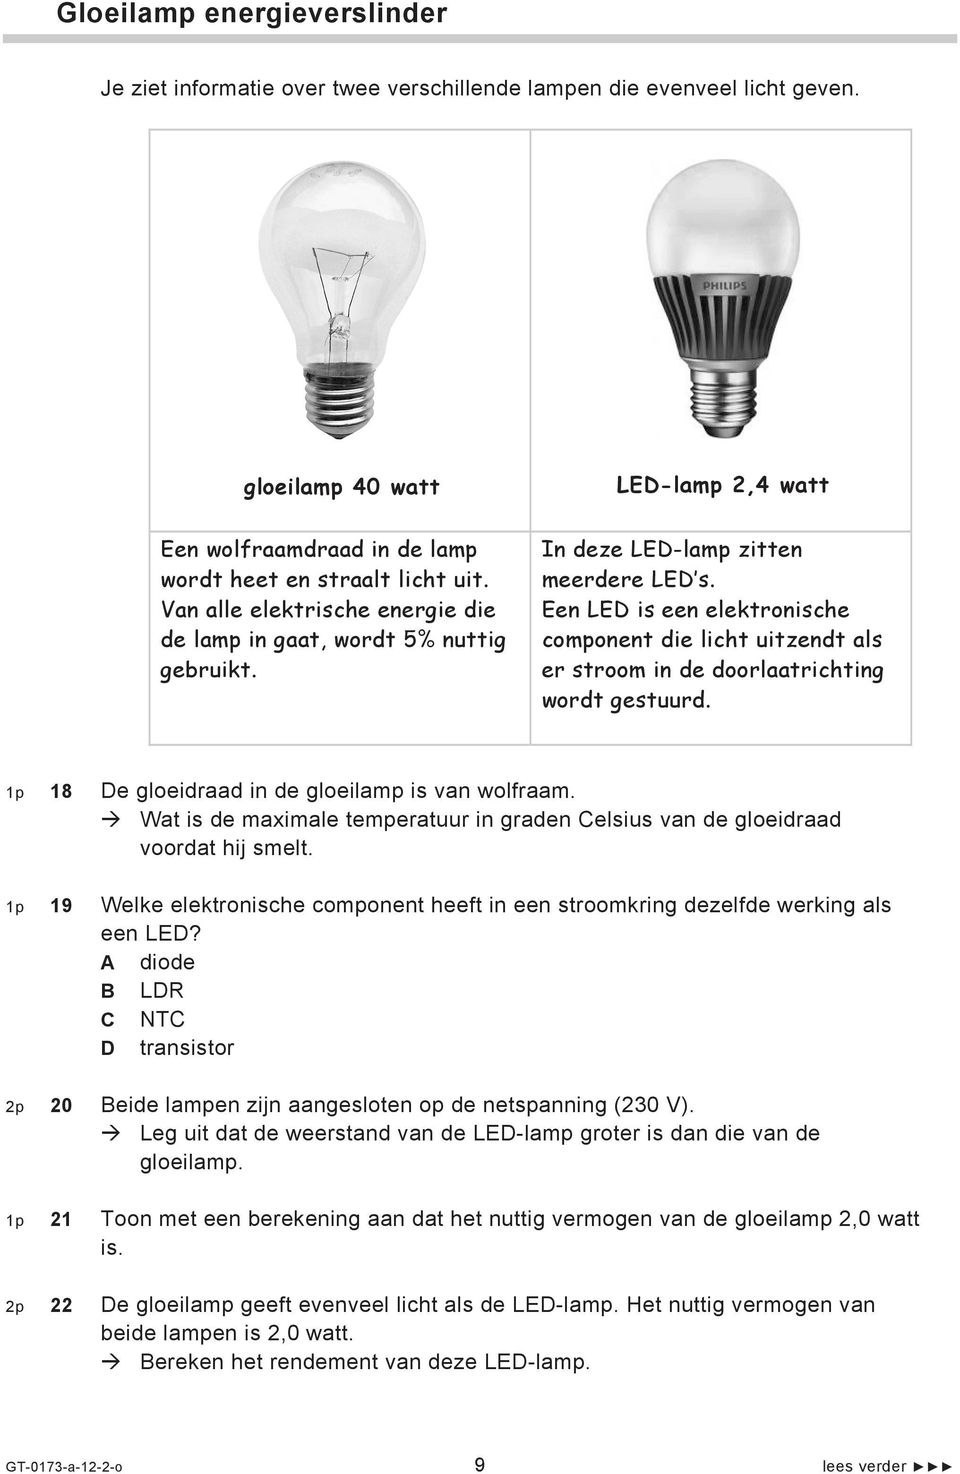 In deze LED-lamp zitten meerdere LED s. Een LED is een elektronische component die licht uitzendt als er stroom in de doorlaatrichting wordt gestuurd.